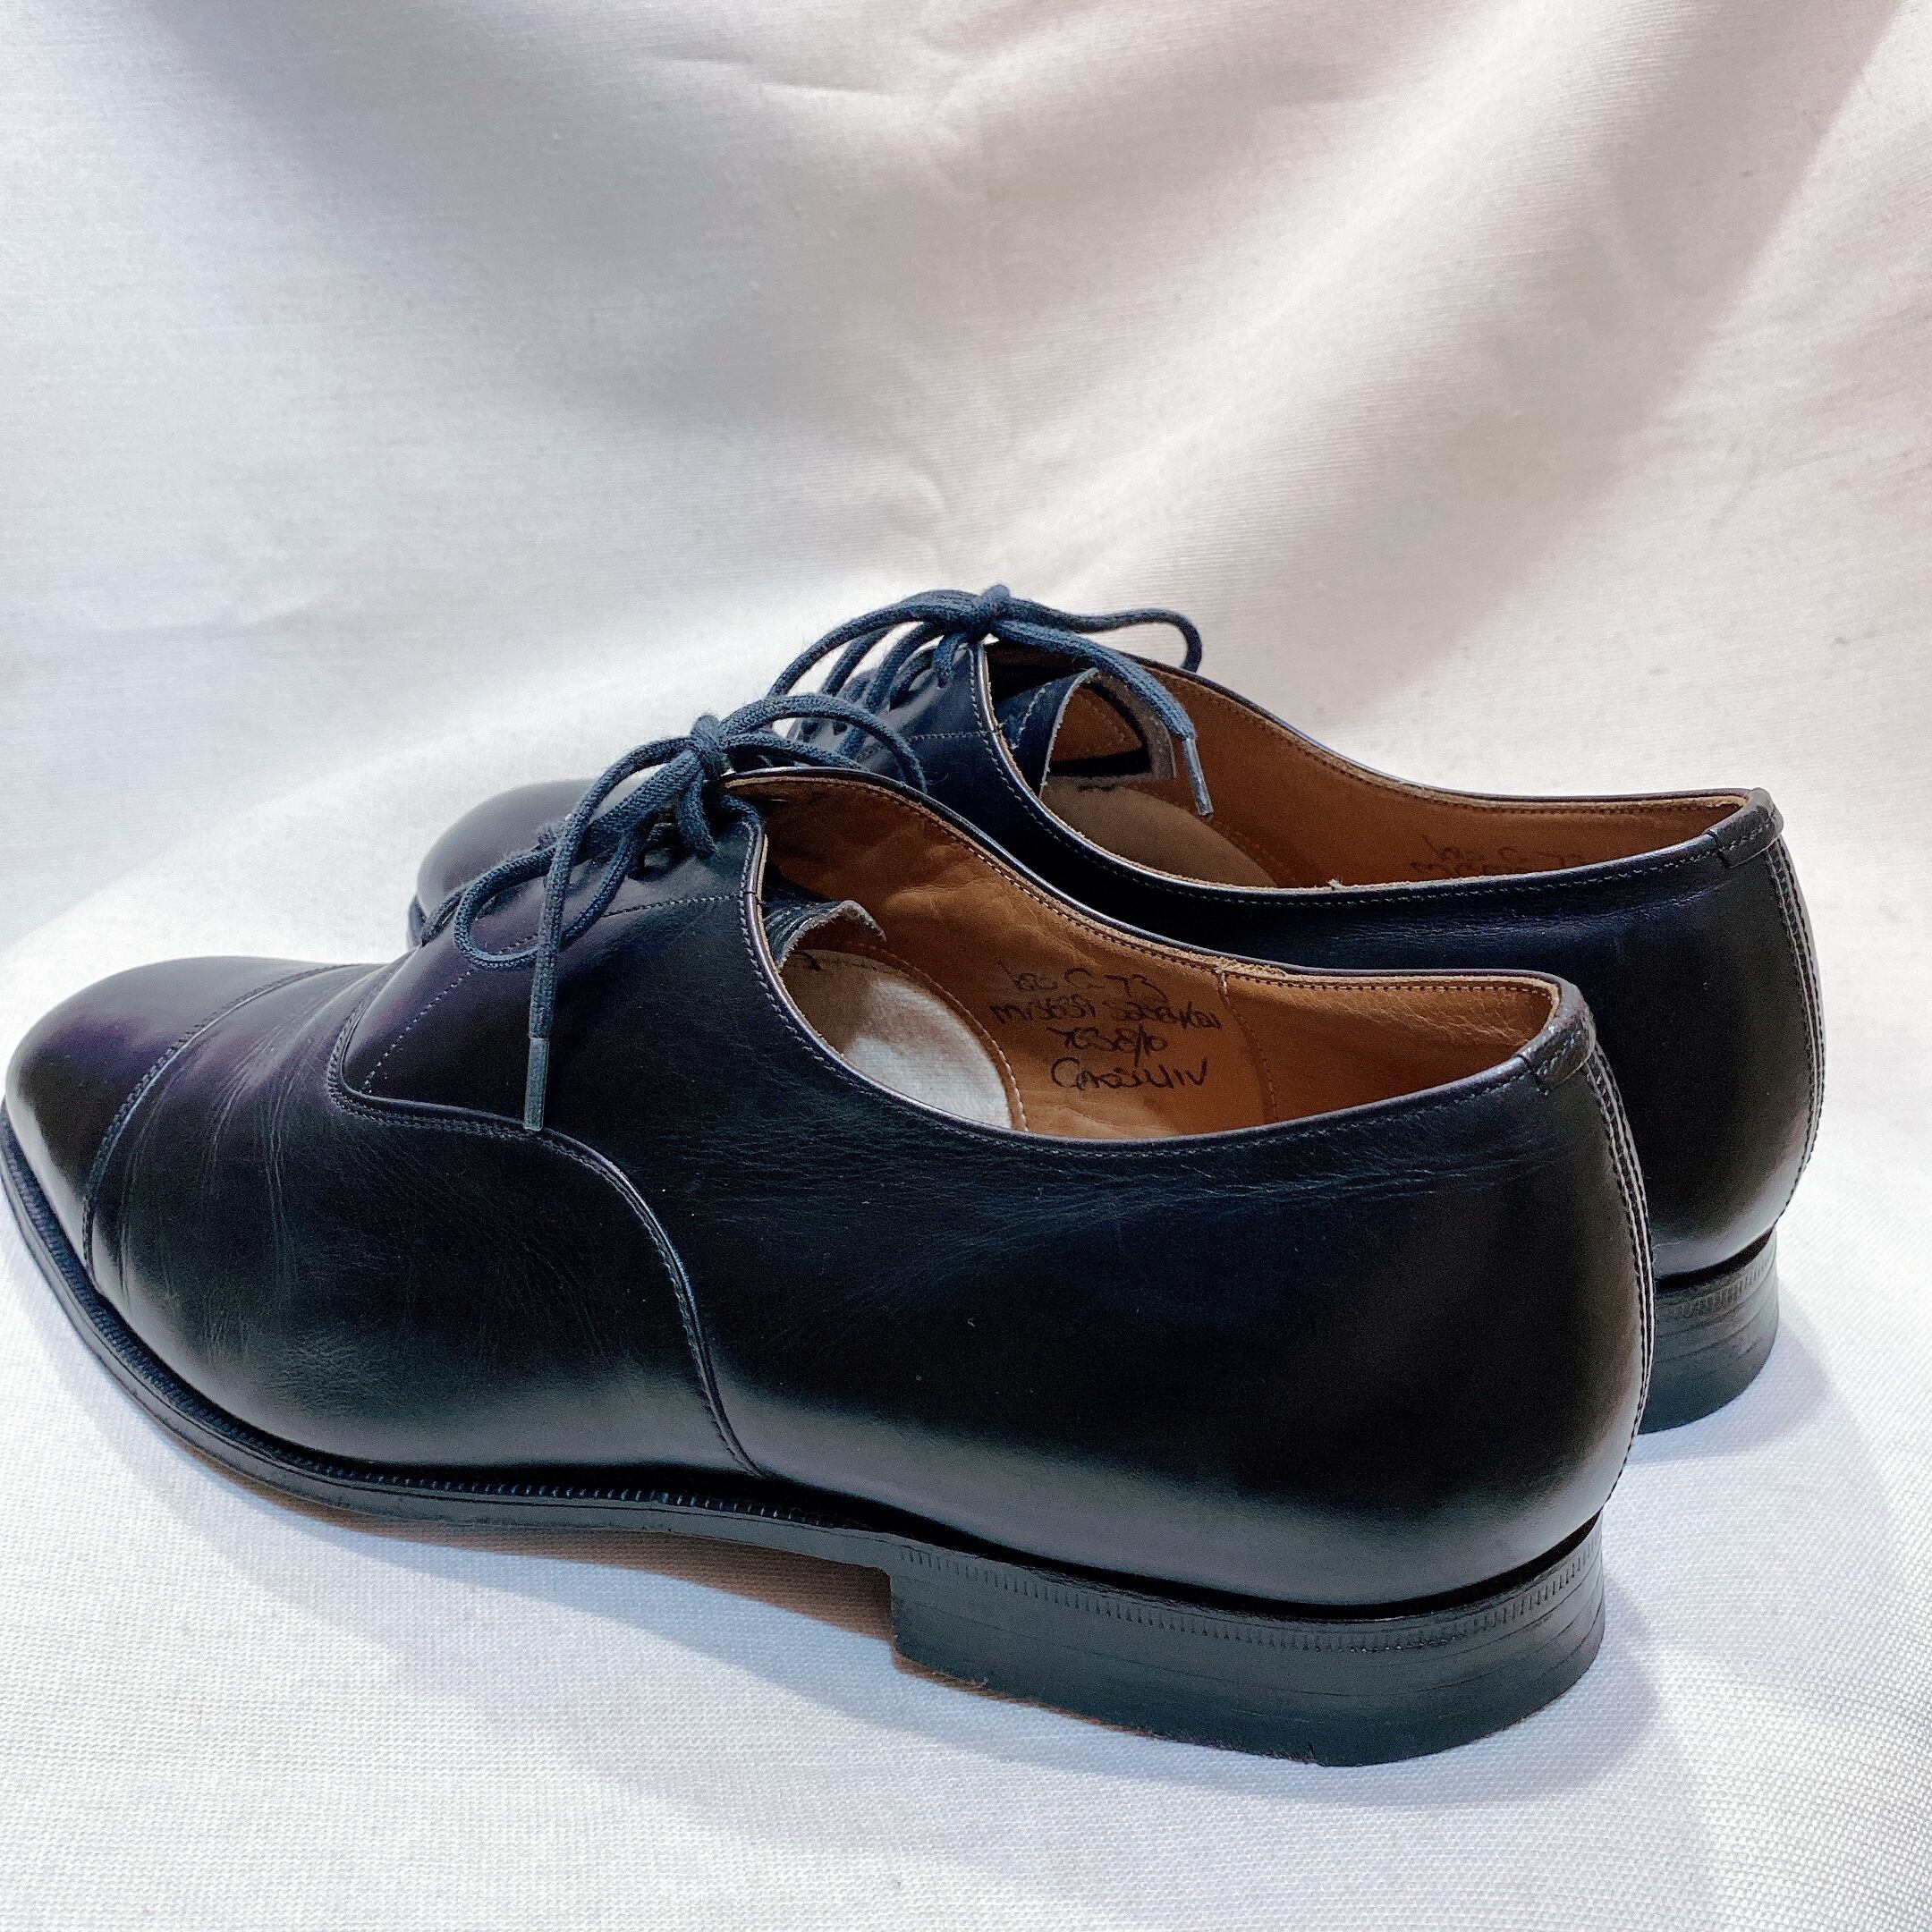 チャーチ／Church's シューズ ビジネスシューズ 靴 ビジネス メンズ 男性 男性用レザー 革 本革 ブラック 黒  INDIGO インディゴ ラバーソール ウイングチップ